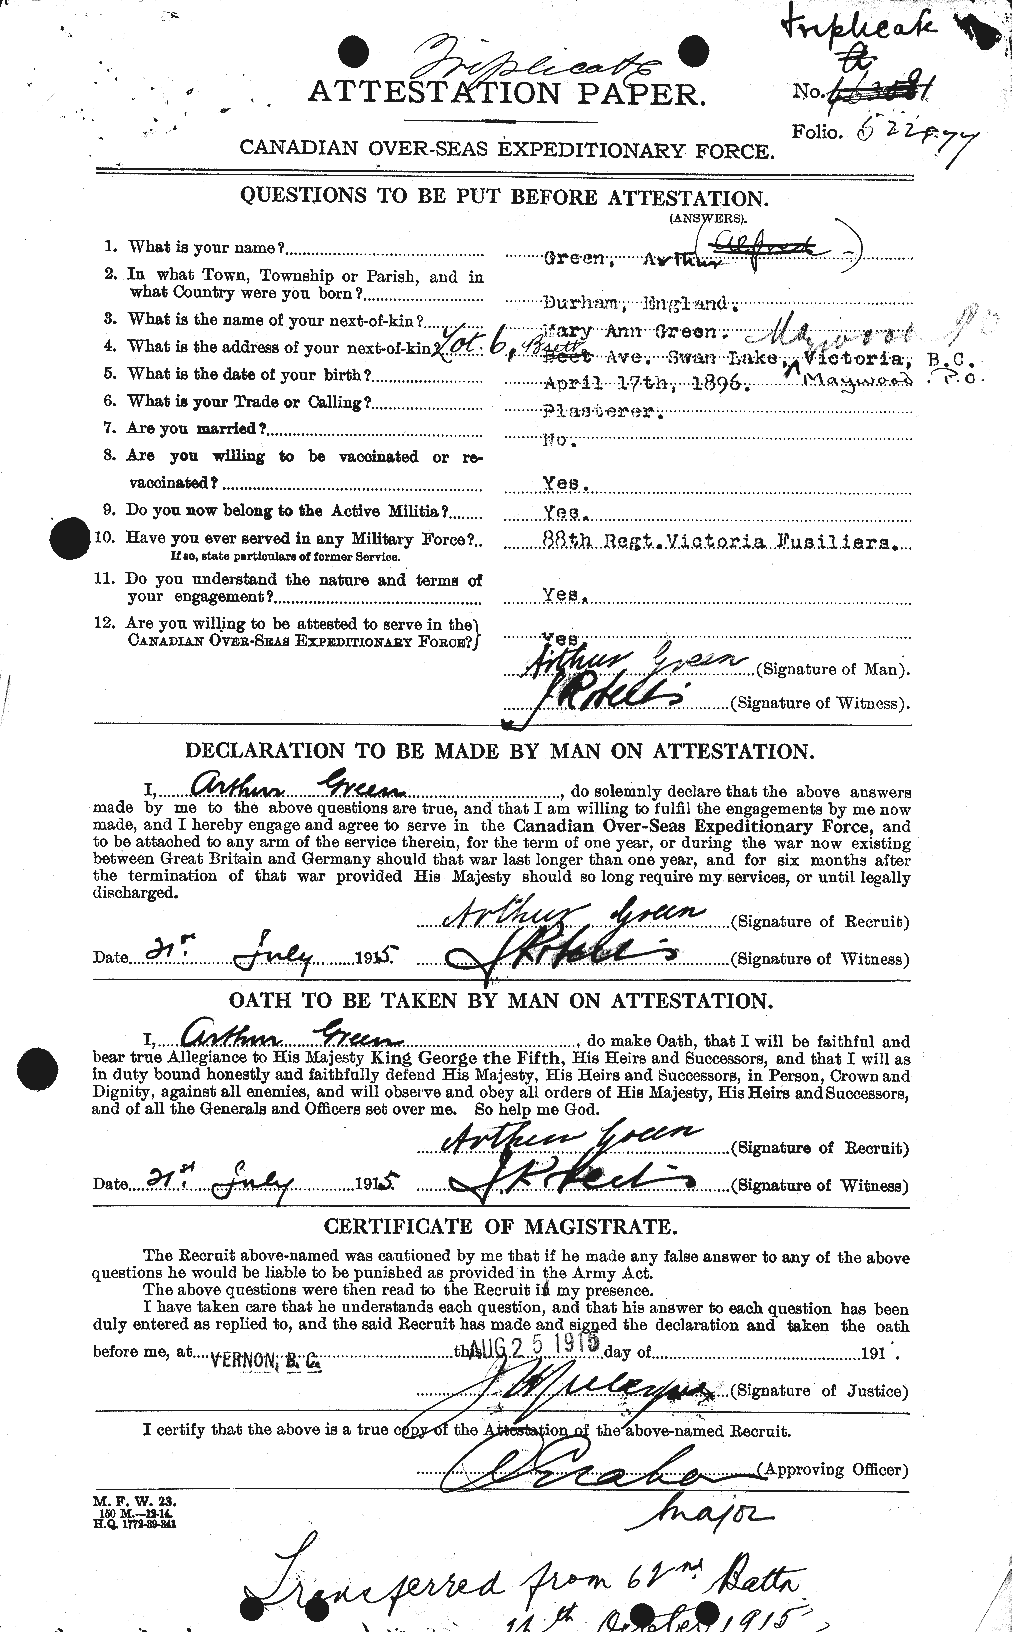 Dossiers du Personnel de la Première Guerre mondiale - CEC 363838a